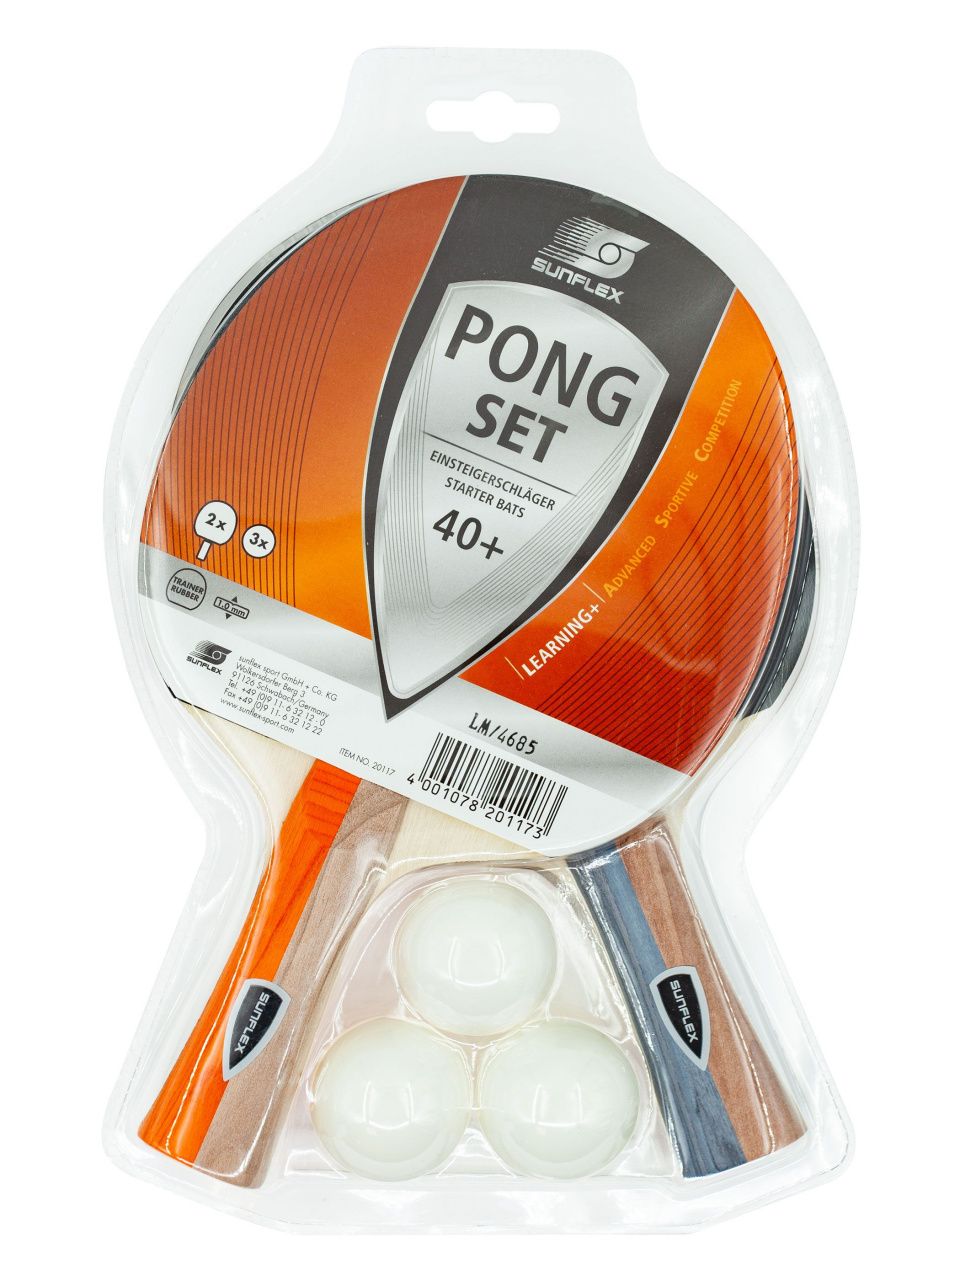 Набор для настольного тенниса Sunflex Pong